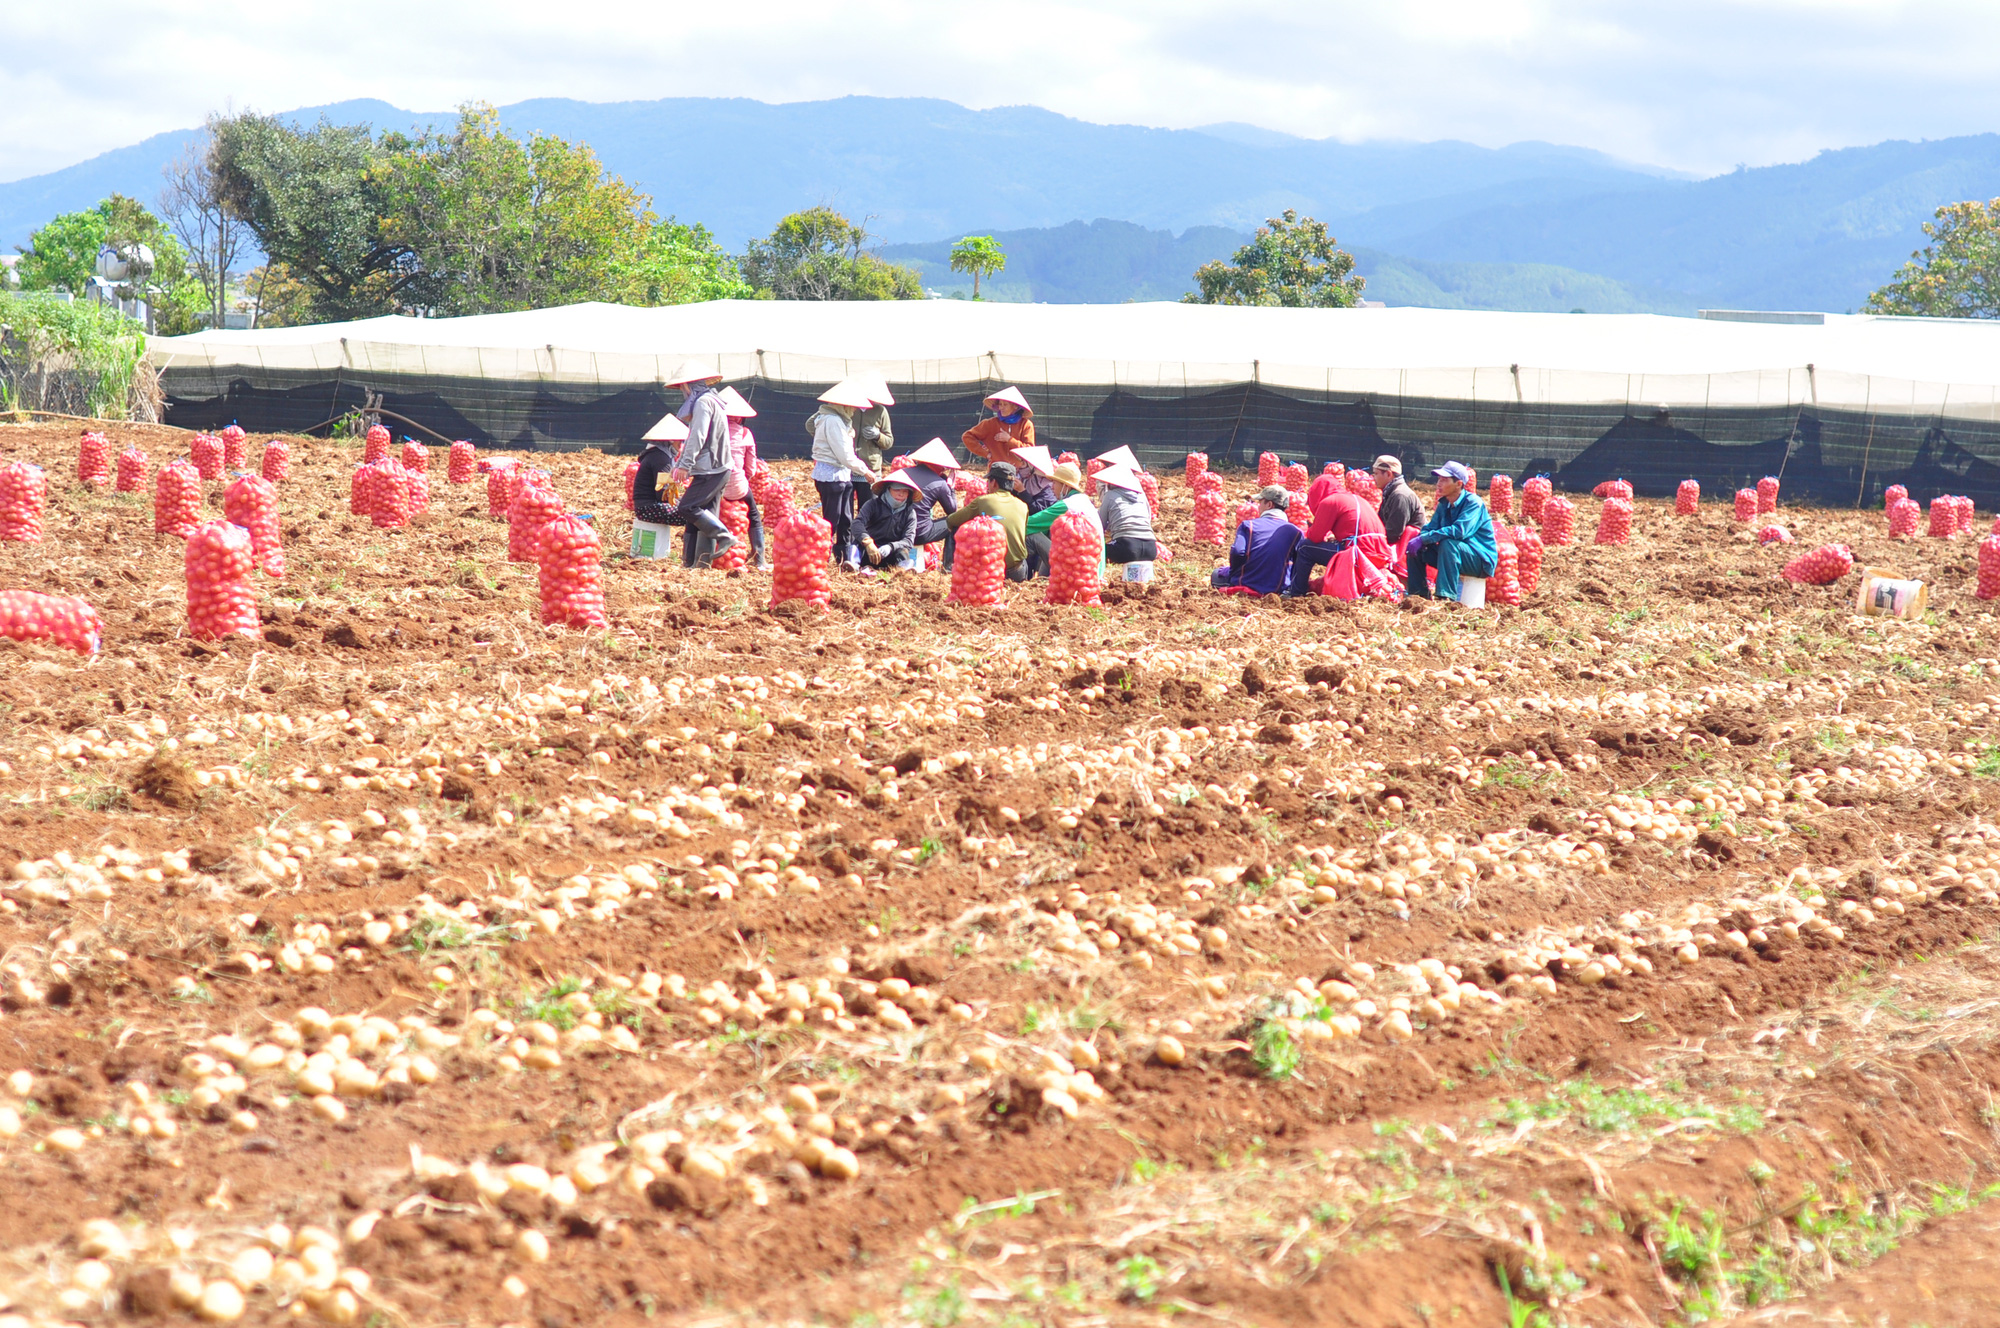 Liên kết trồng khoai tây, nông dân được ứng trước phân, giống vẫn lãi 170 triệu đồng/ha - Ảnh 2.